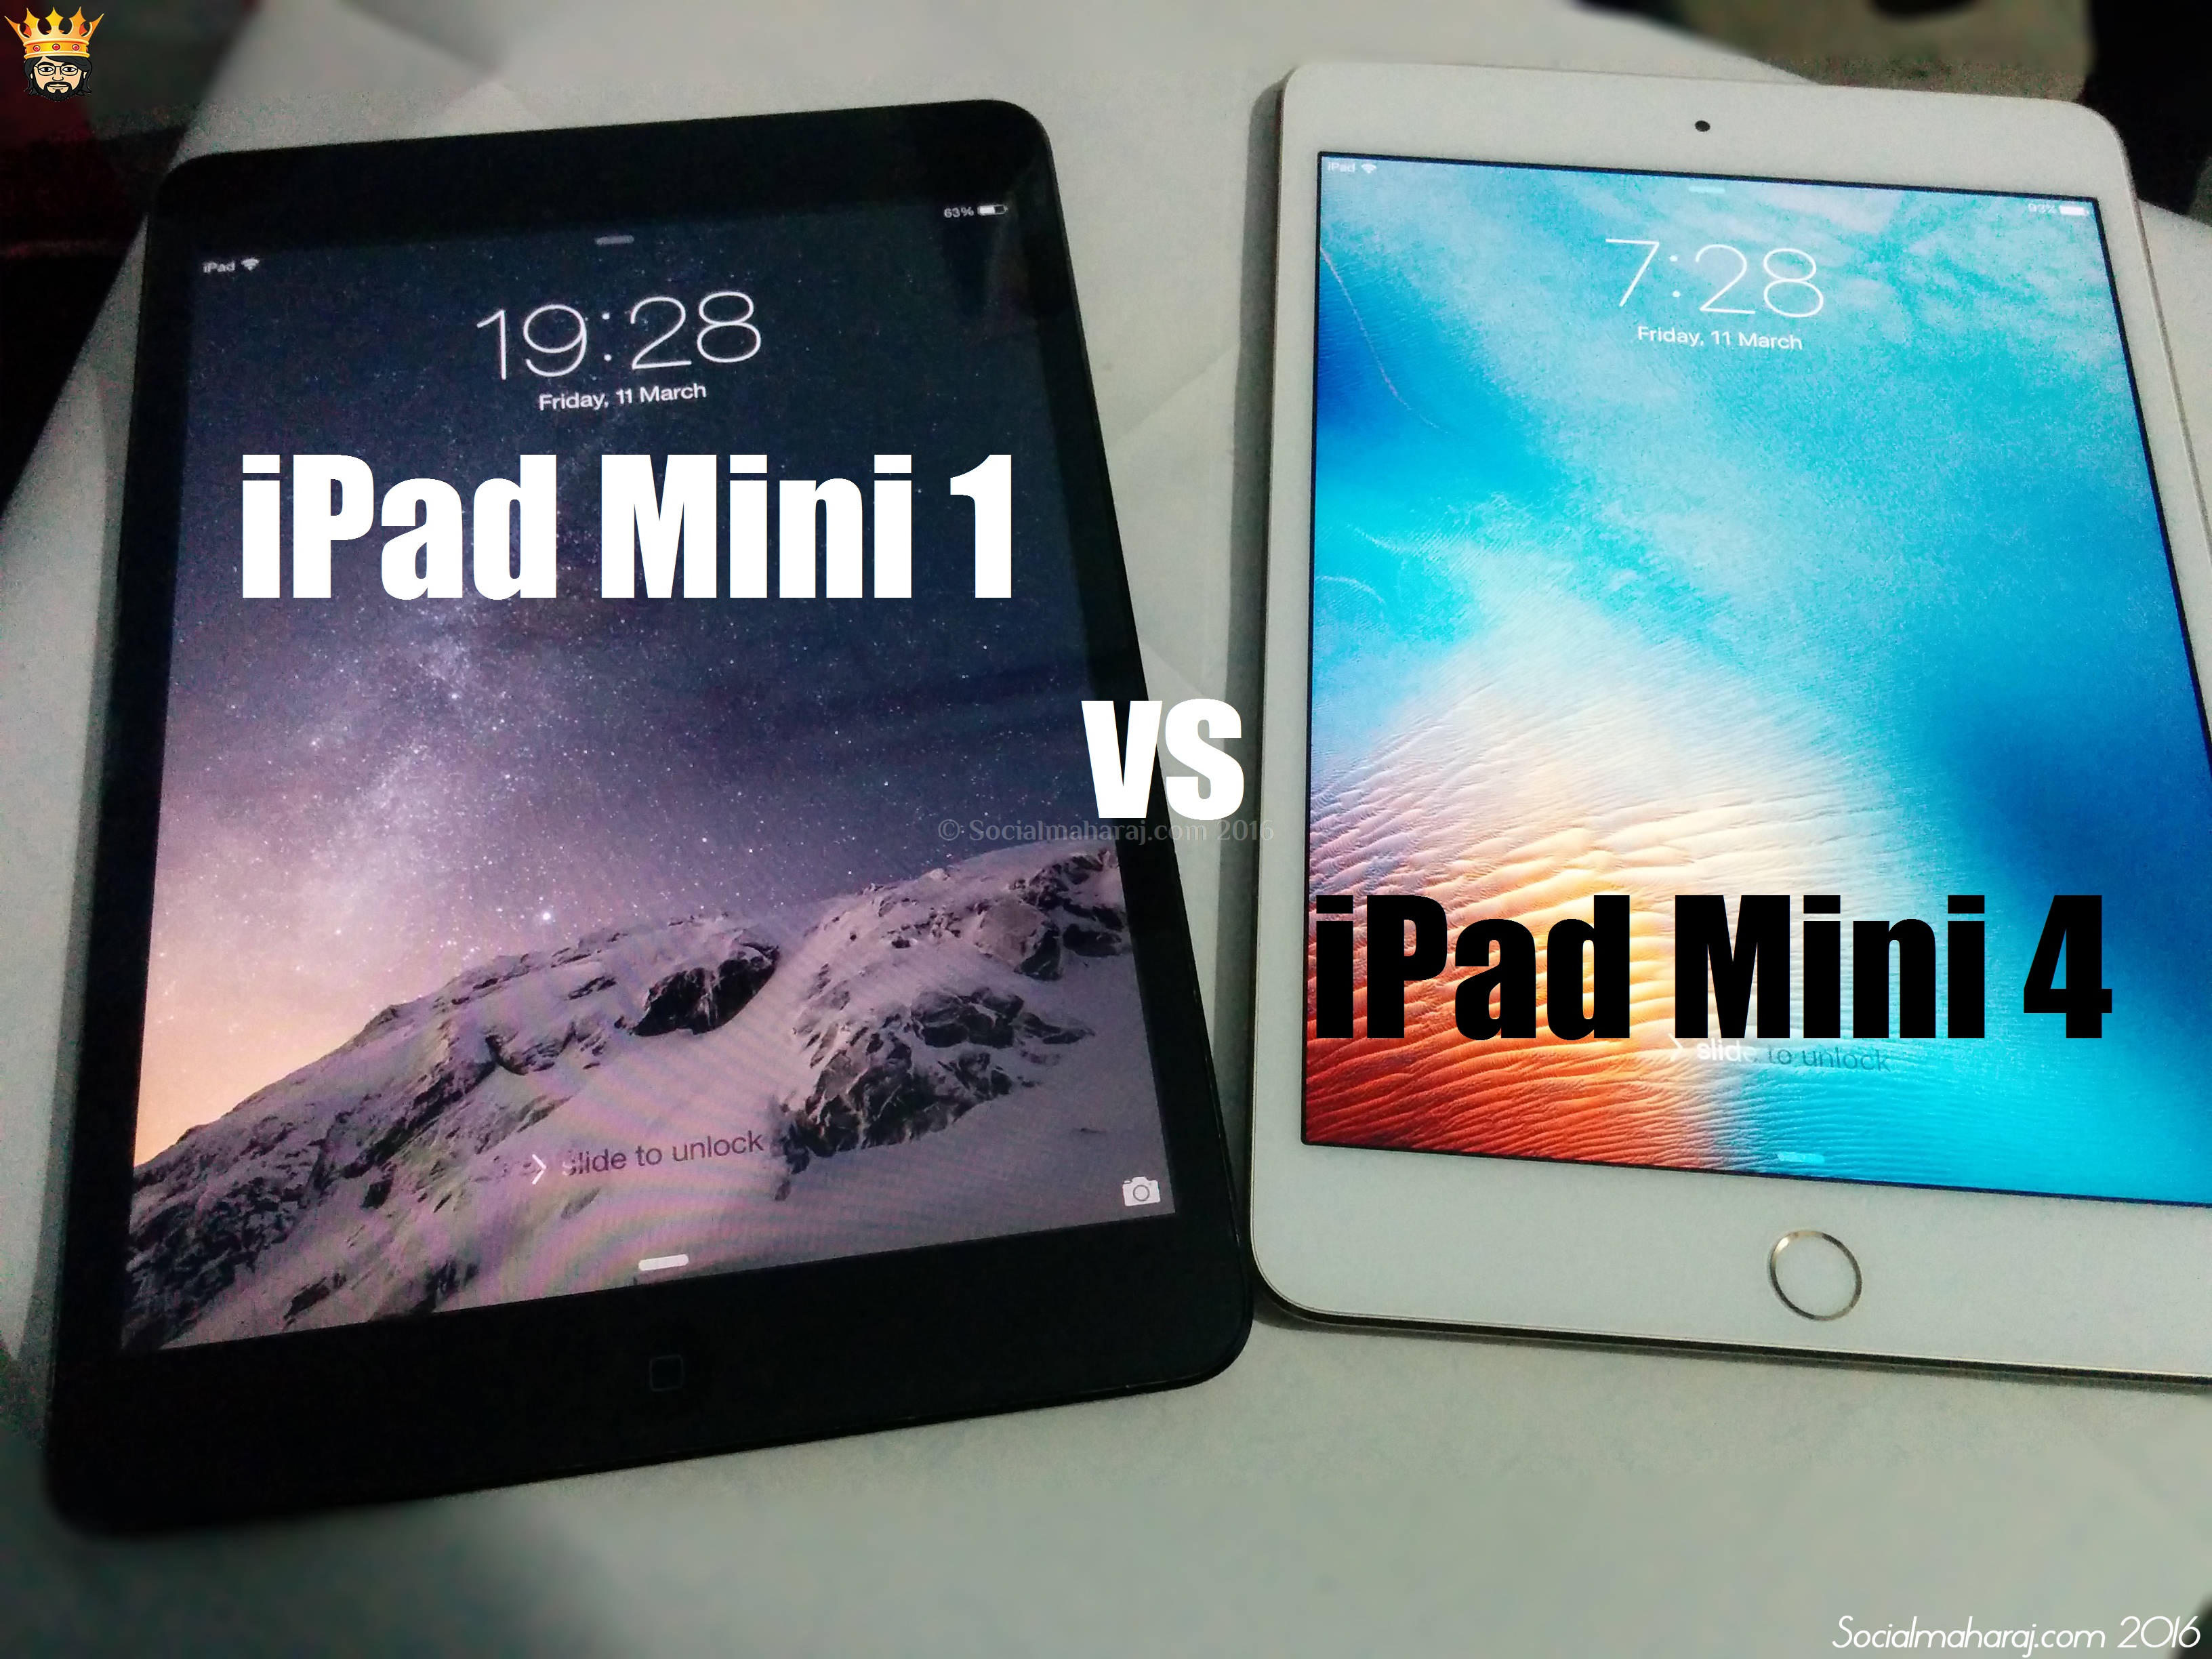 5 Reasons to upgrade your iPad Mini to iPad Mini 4